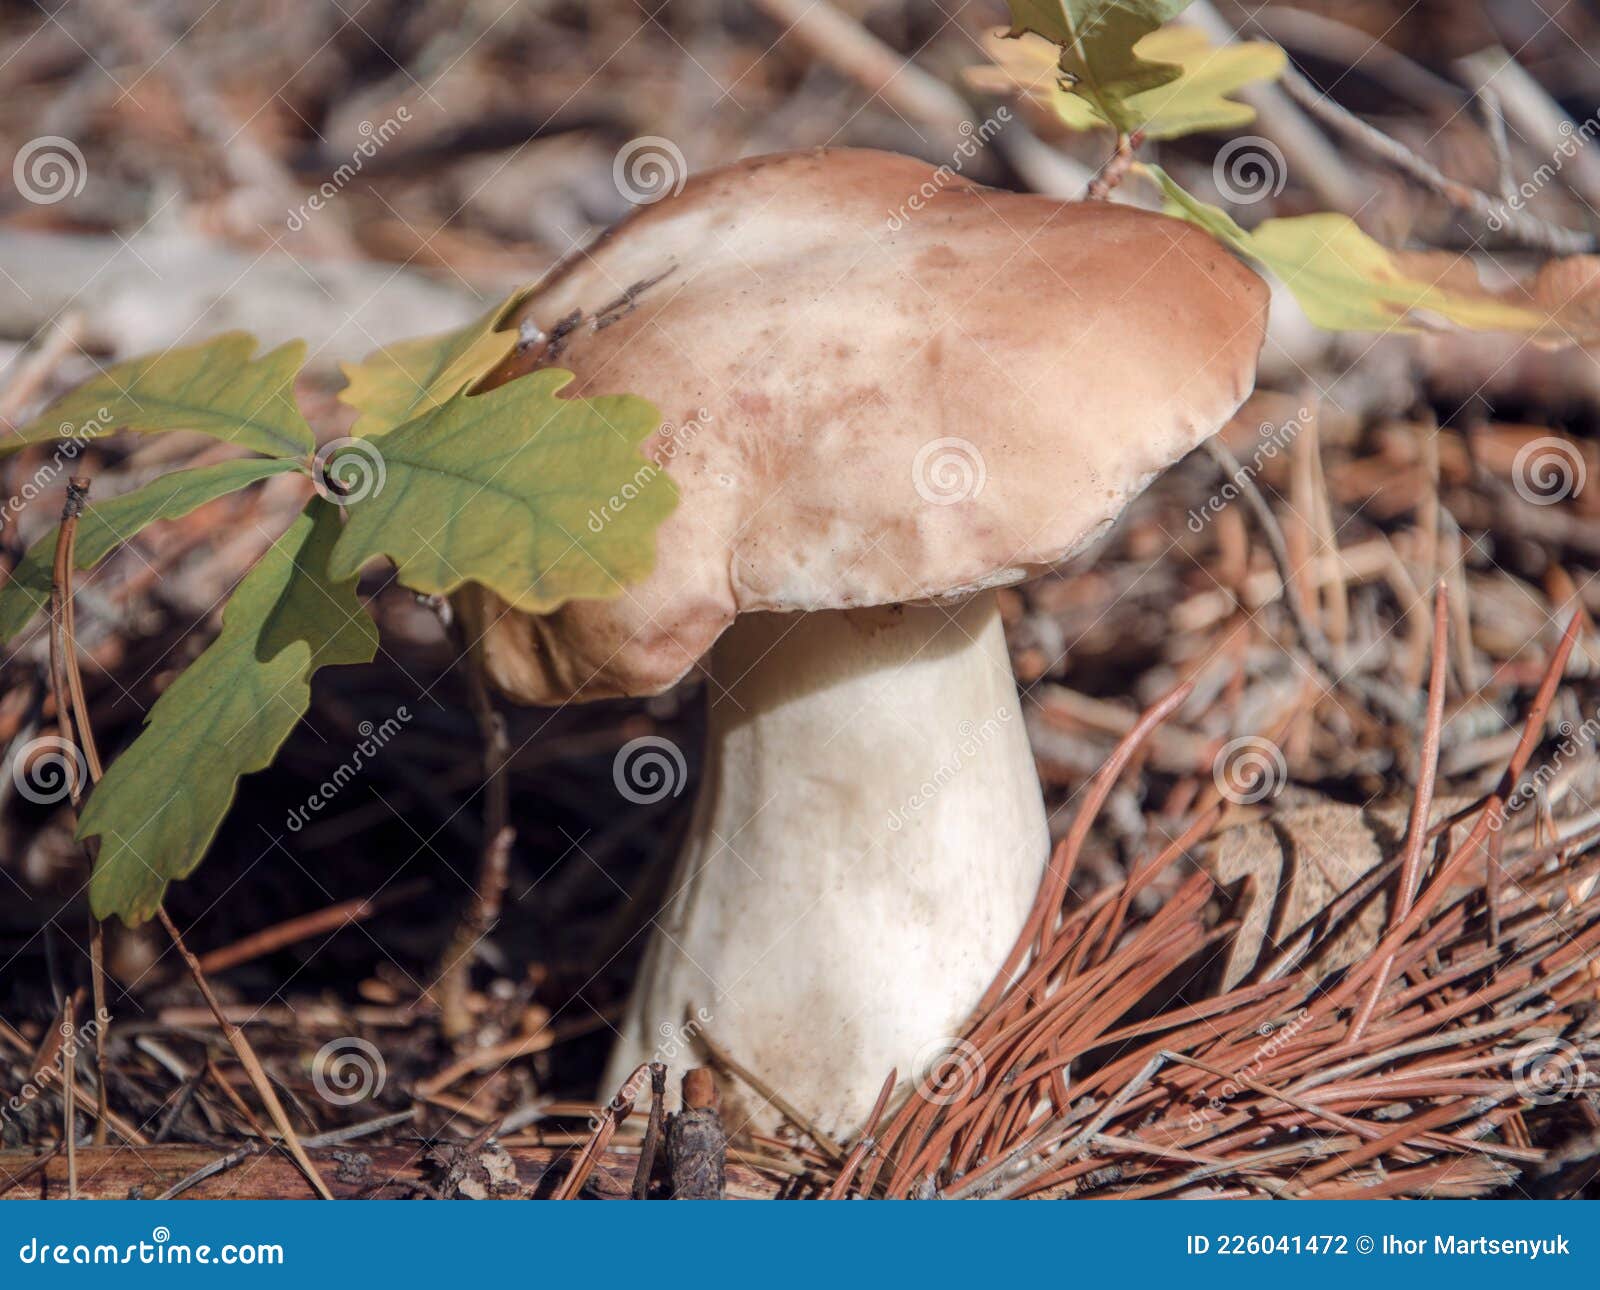 雨后树桩上野蘑菇摄影图高清摄影大图-千库网